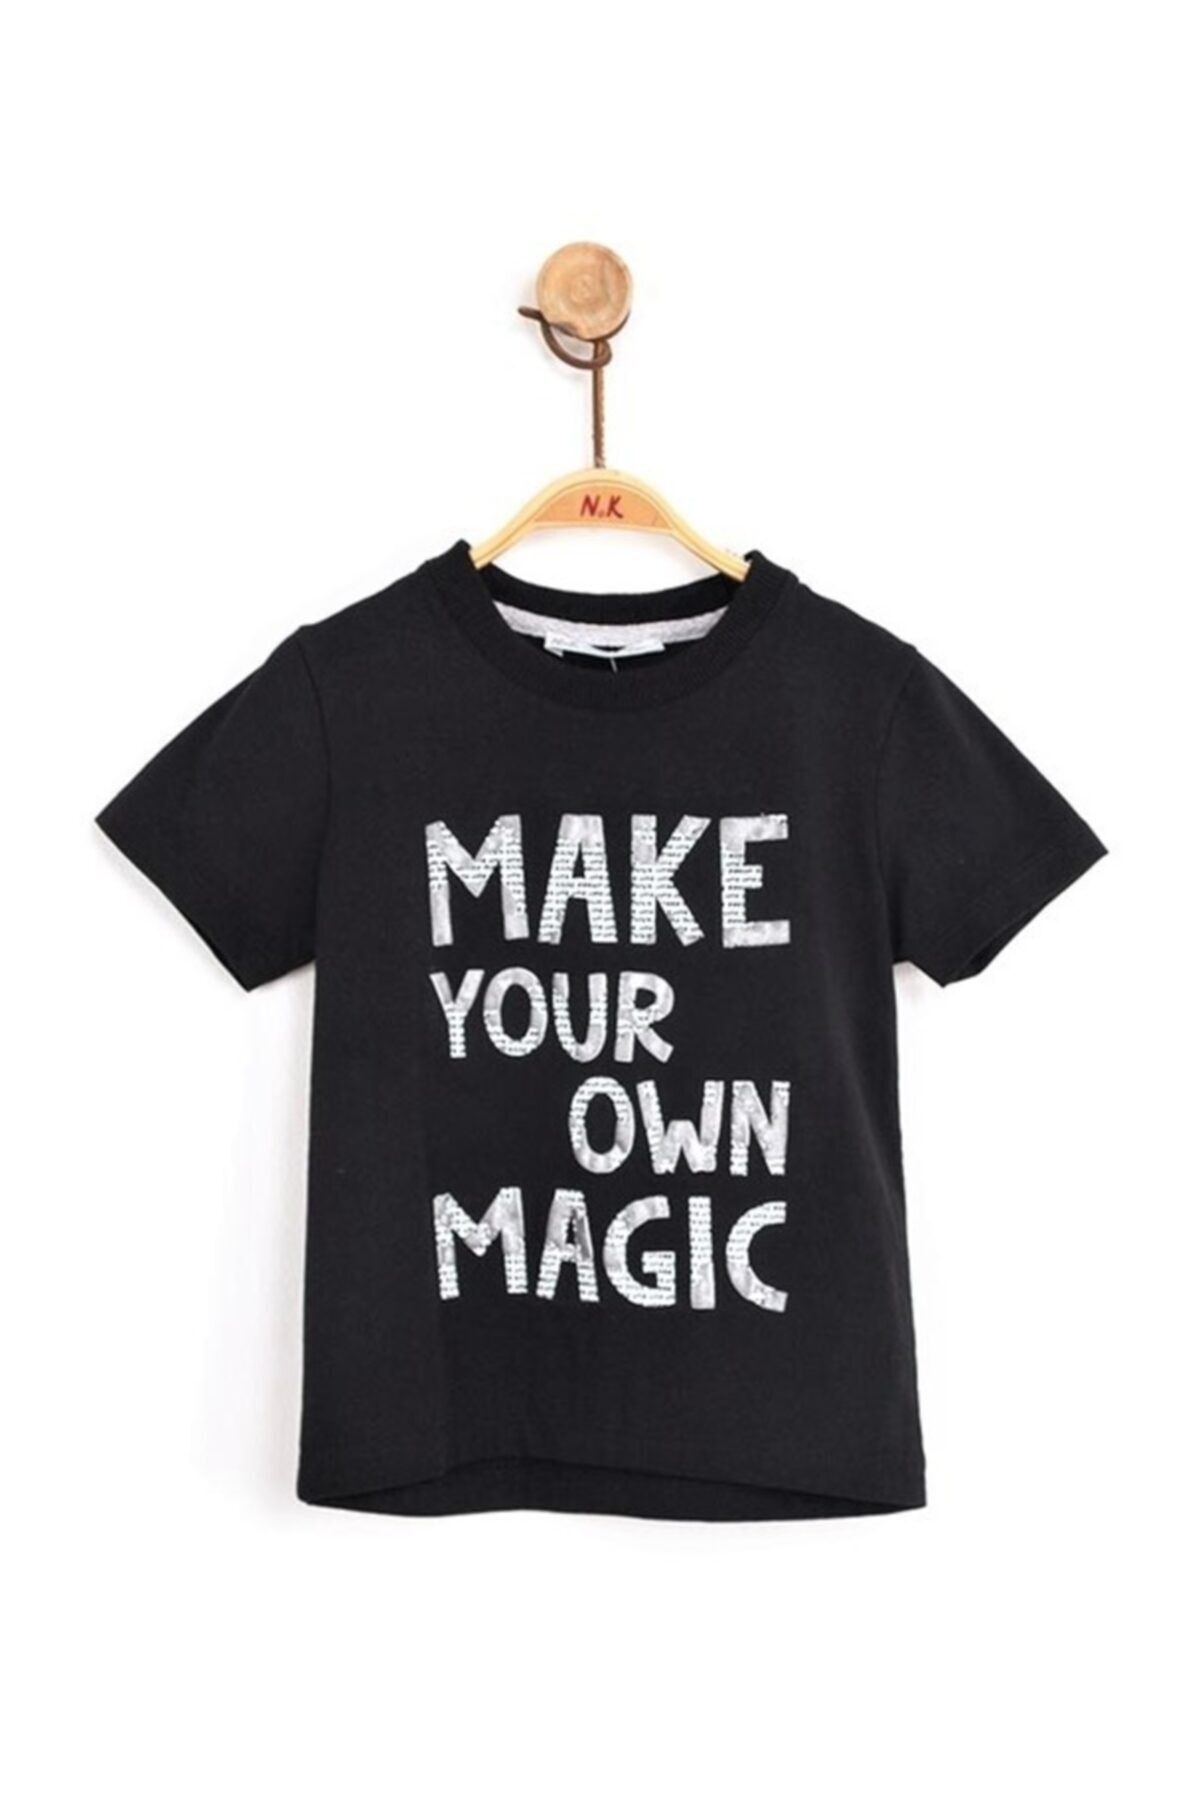 Nk Kids Erkek Çocuk Magic T-shirt